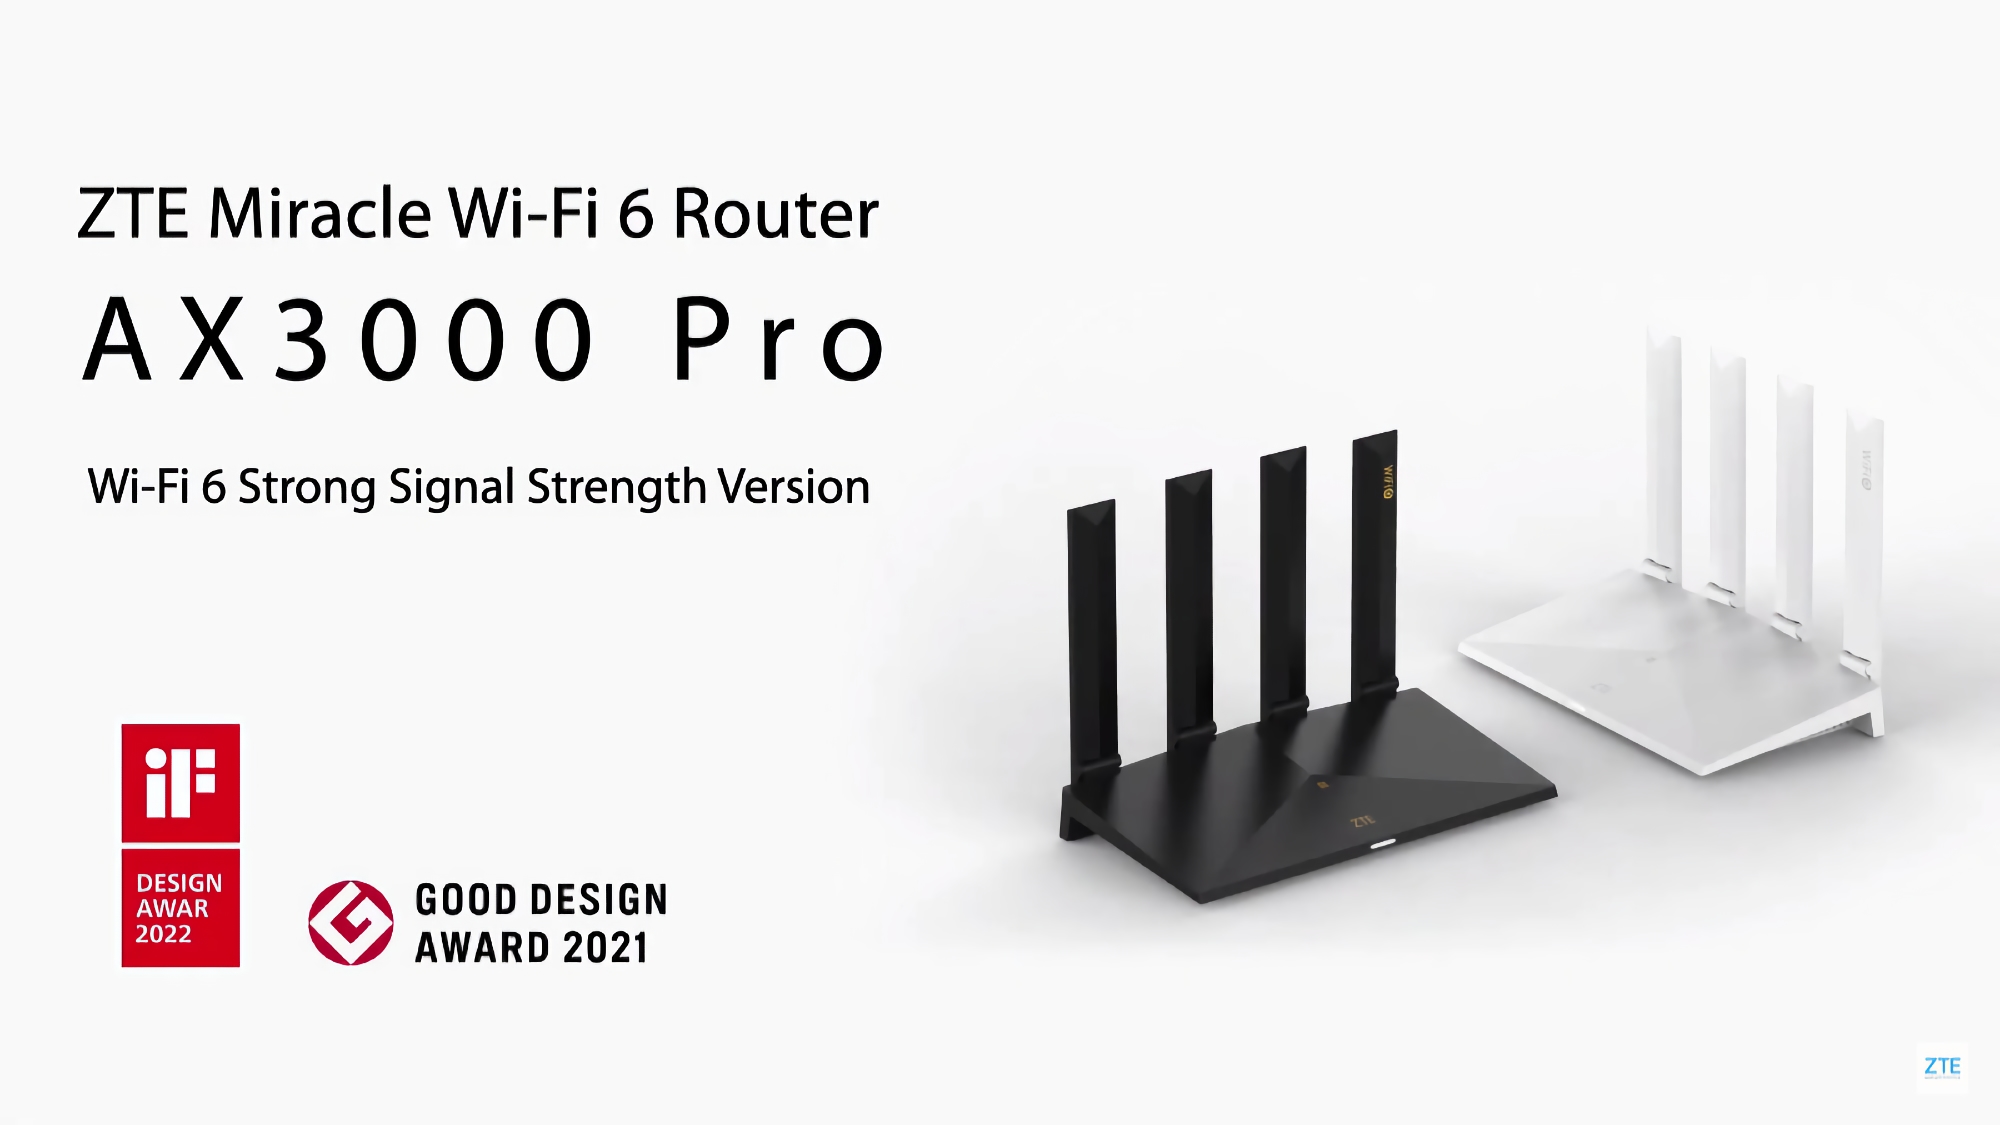 ZTE bringt den AX3000 Pro Router mit Wi-Fi 6, NFC und Qualcomm-Chip für 99 Dollar auf den Weltmarkt